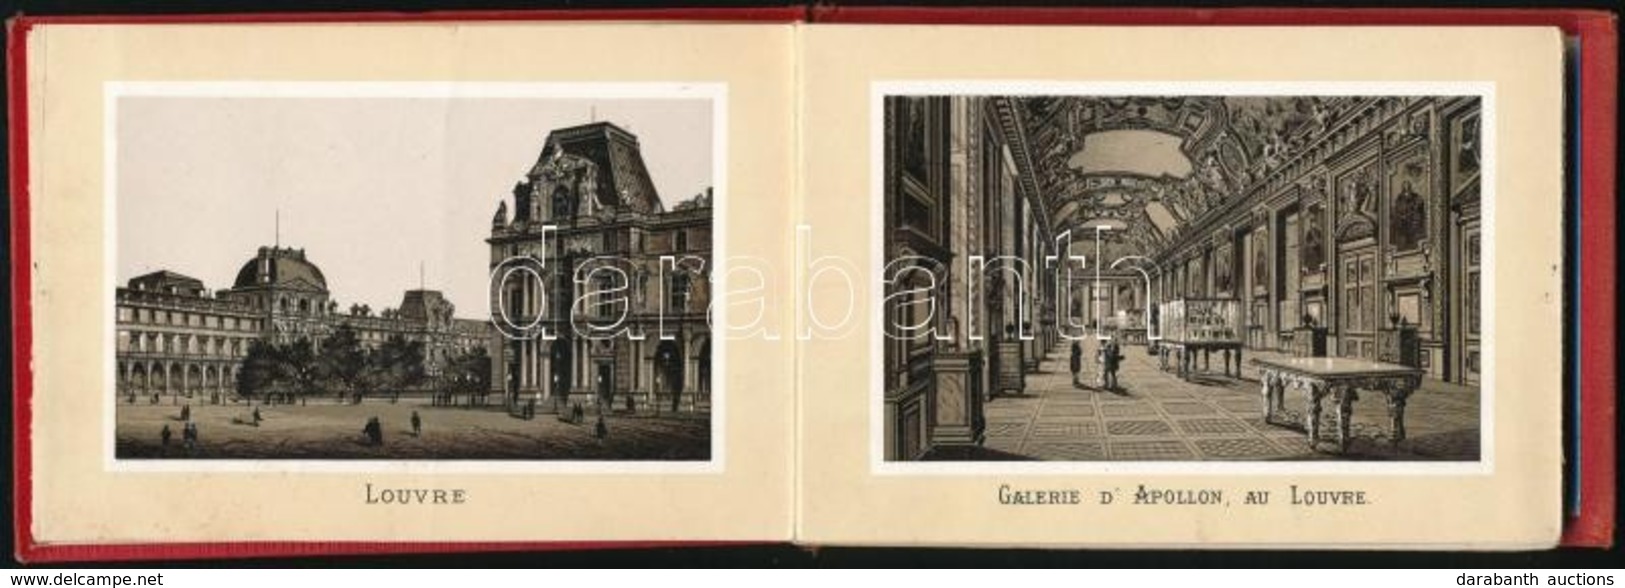 Cca 1890 Párizs 30 Litografált Képet Tartalmazó Leporelló Egészvászon Kötésben. / Leporello With 30 Litho Images. 15x10  - Non Classés